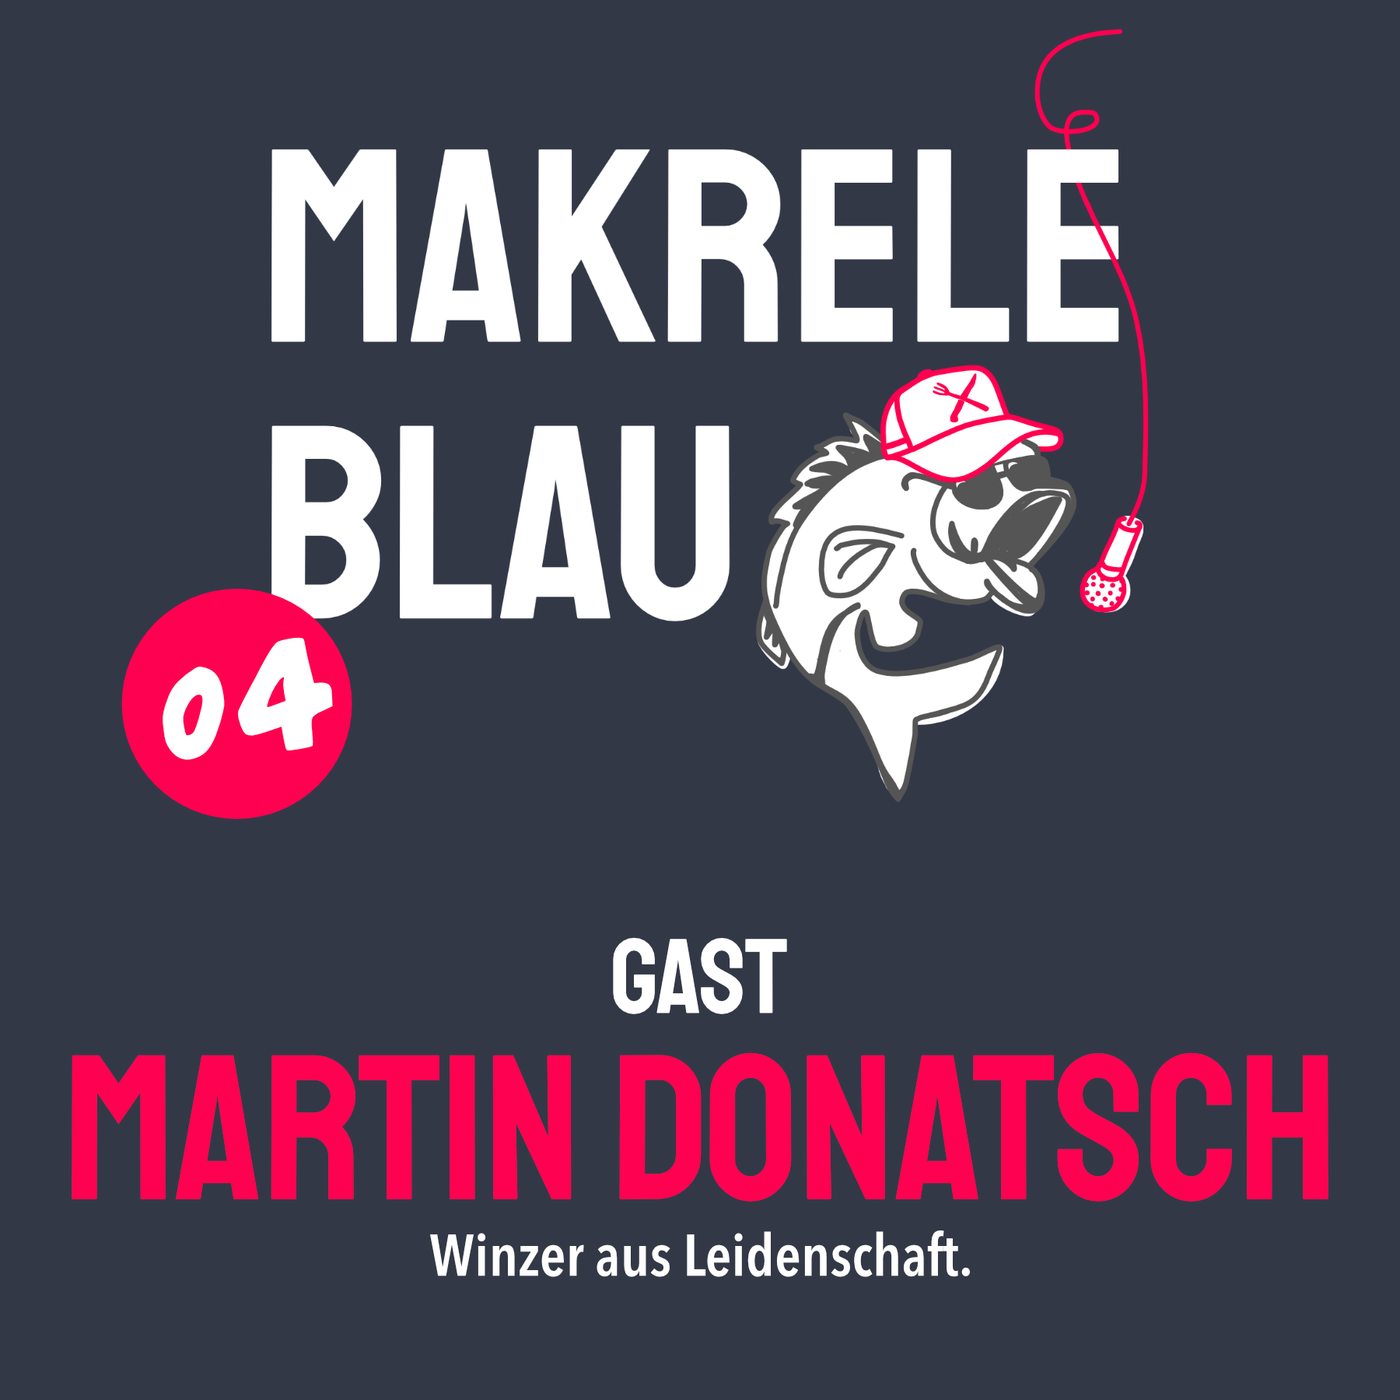 Makrele Blau #04 – Uf än Schlegel Wii mit em Martin Donatsch